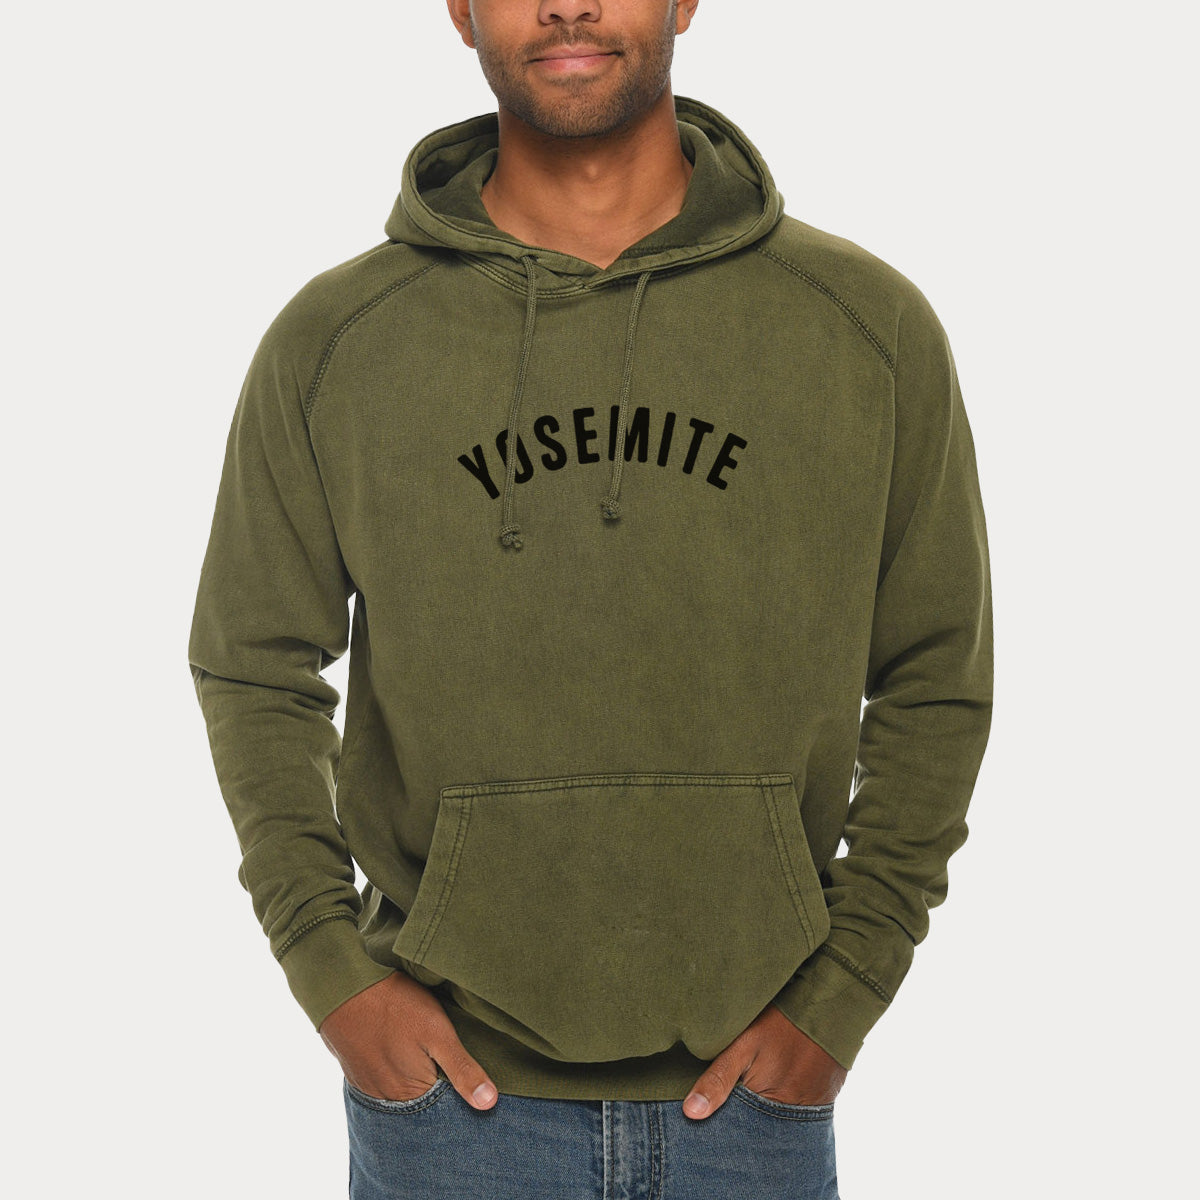 Yosemite  - Mid-Weight Unisex Vintage 100% Cotton Hoodie